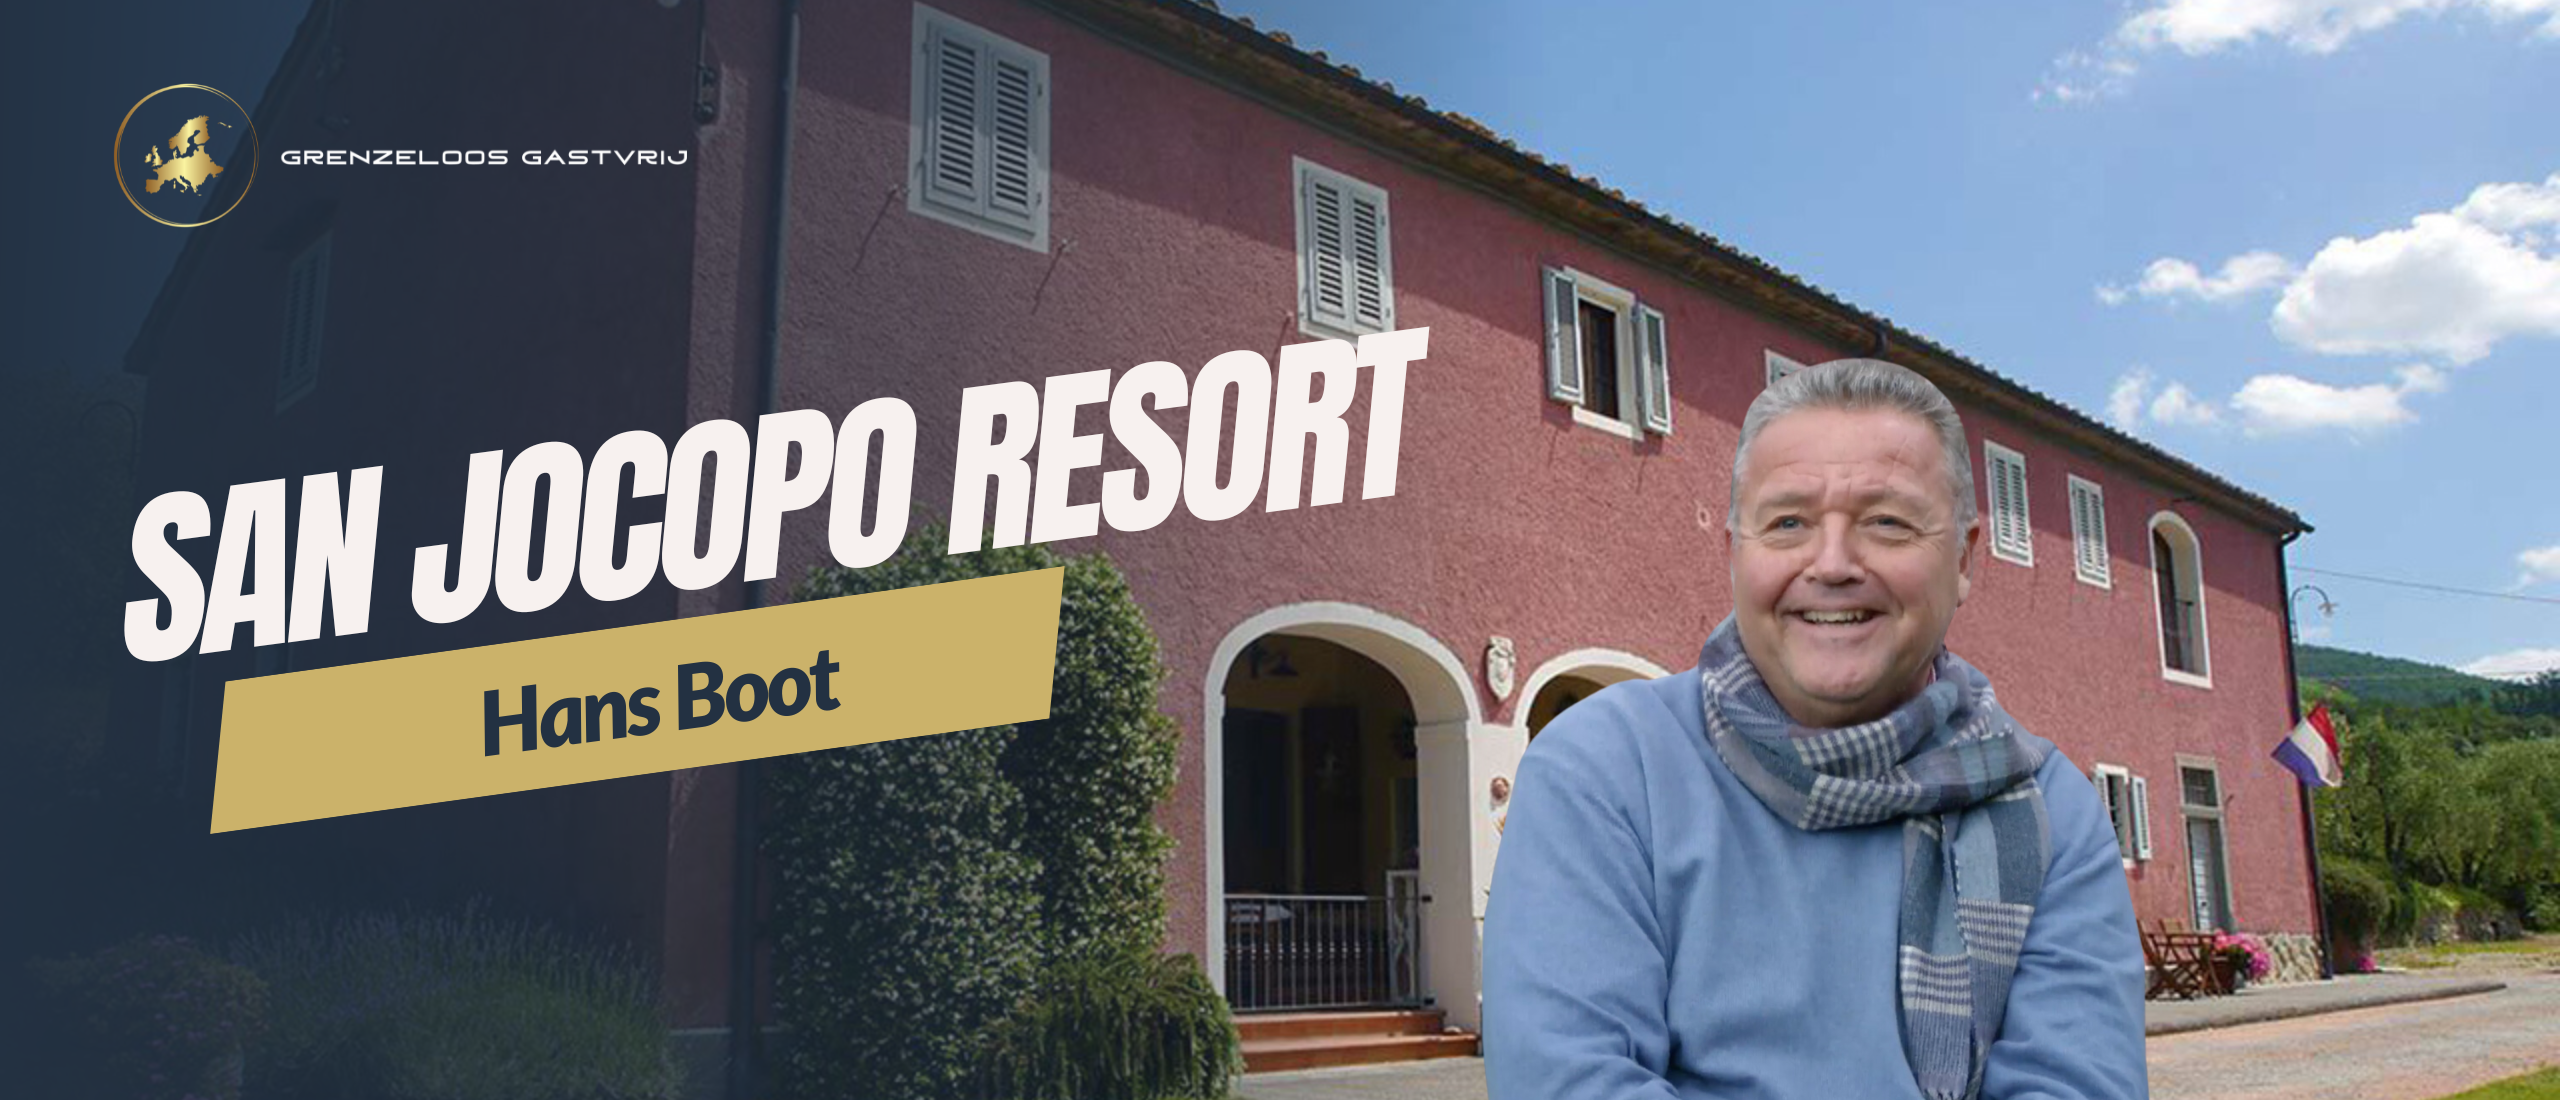 De ondernemersreis van: Hans Boot - Villa San Jacopo